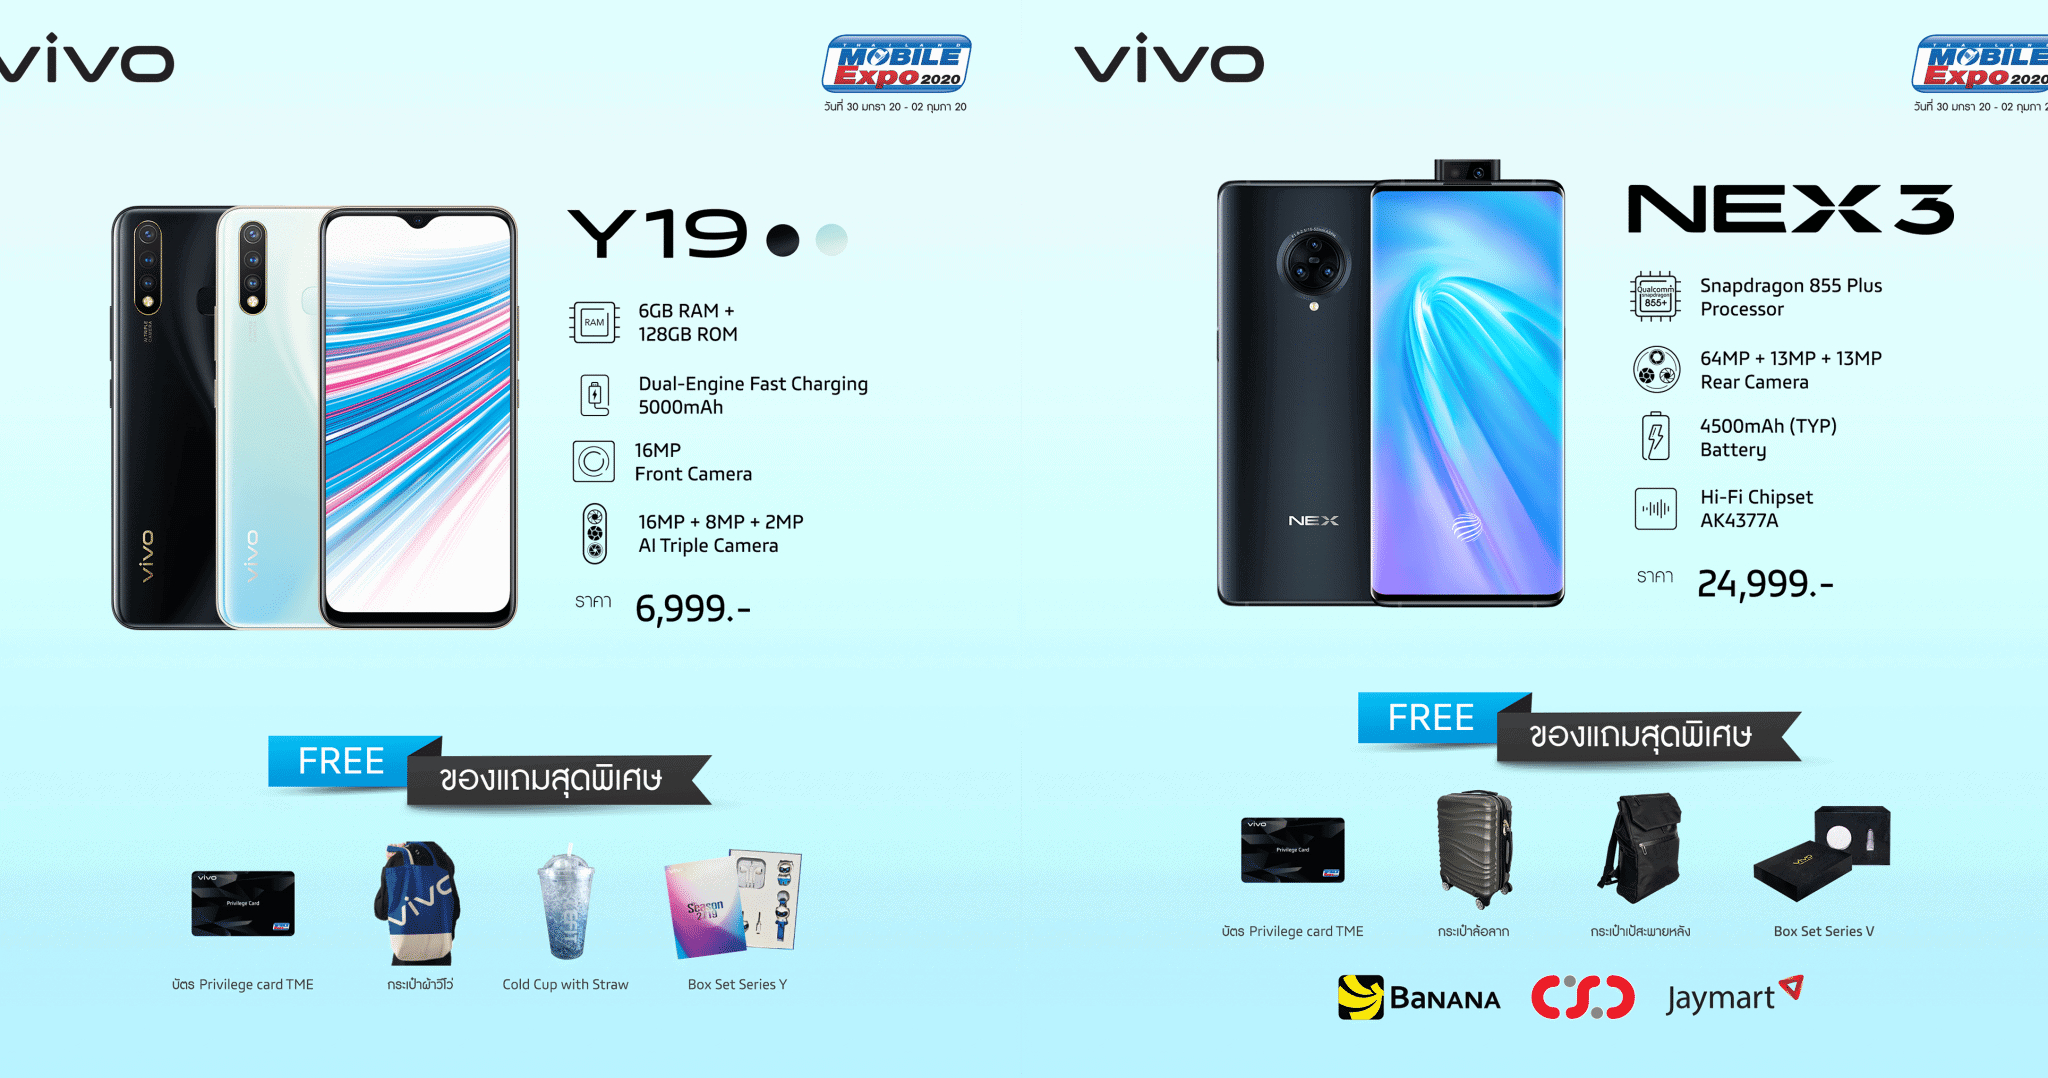 รวมโปรโมชัน Vivo ในงาน Thailand Mobile Expo 2020 1